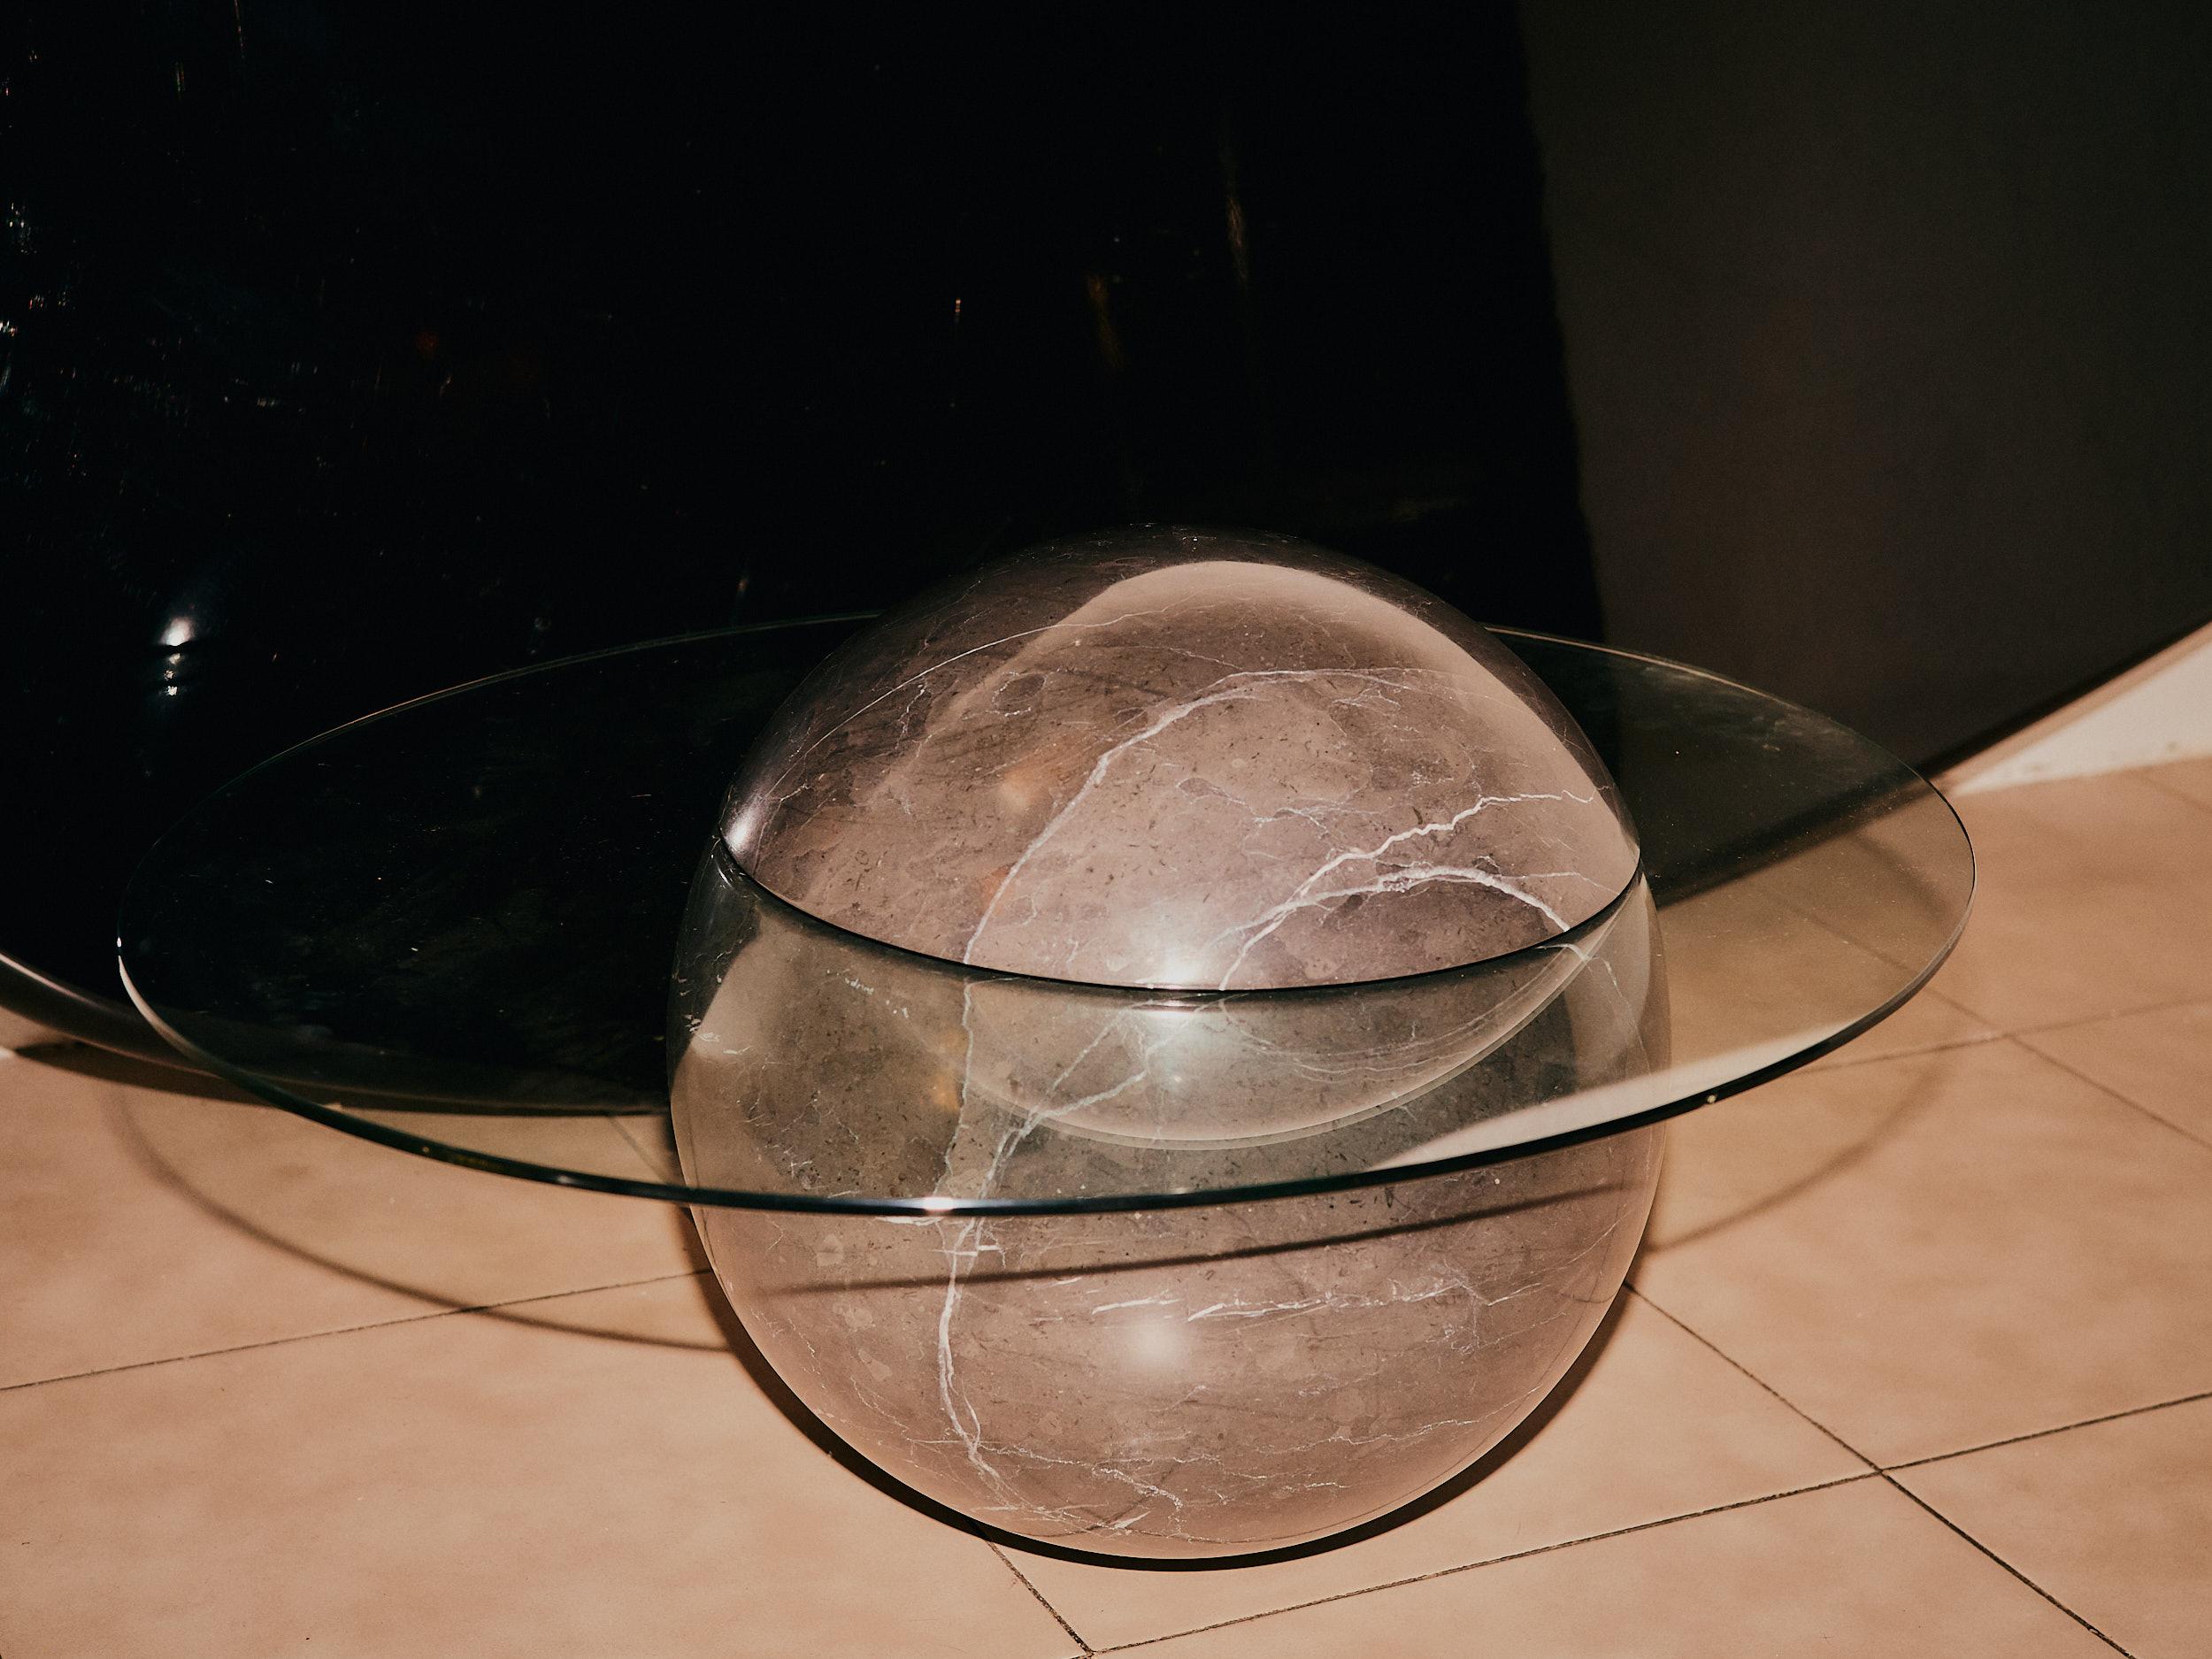 Der Mini Uovo Sculptural Side Table ist eine retro-futuristische Fantasie. Wie eine vergangene Zukunftsvision konstruiert Uovo über geheimnisvollen Geschichten von spekulativen Technologien und fliegenden Sauern; seine schlanken und eleganten Formen